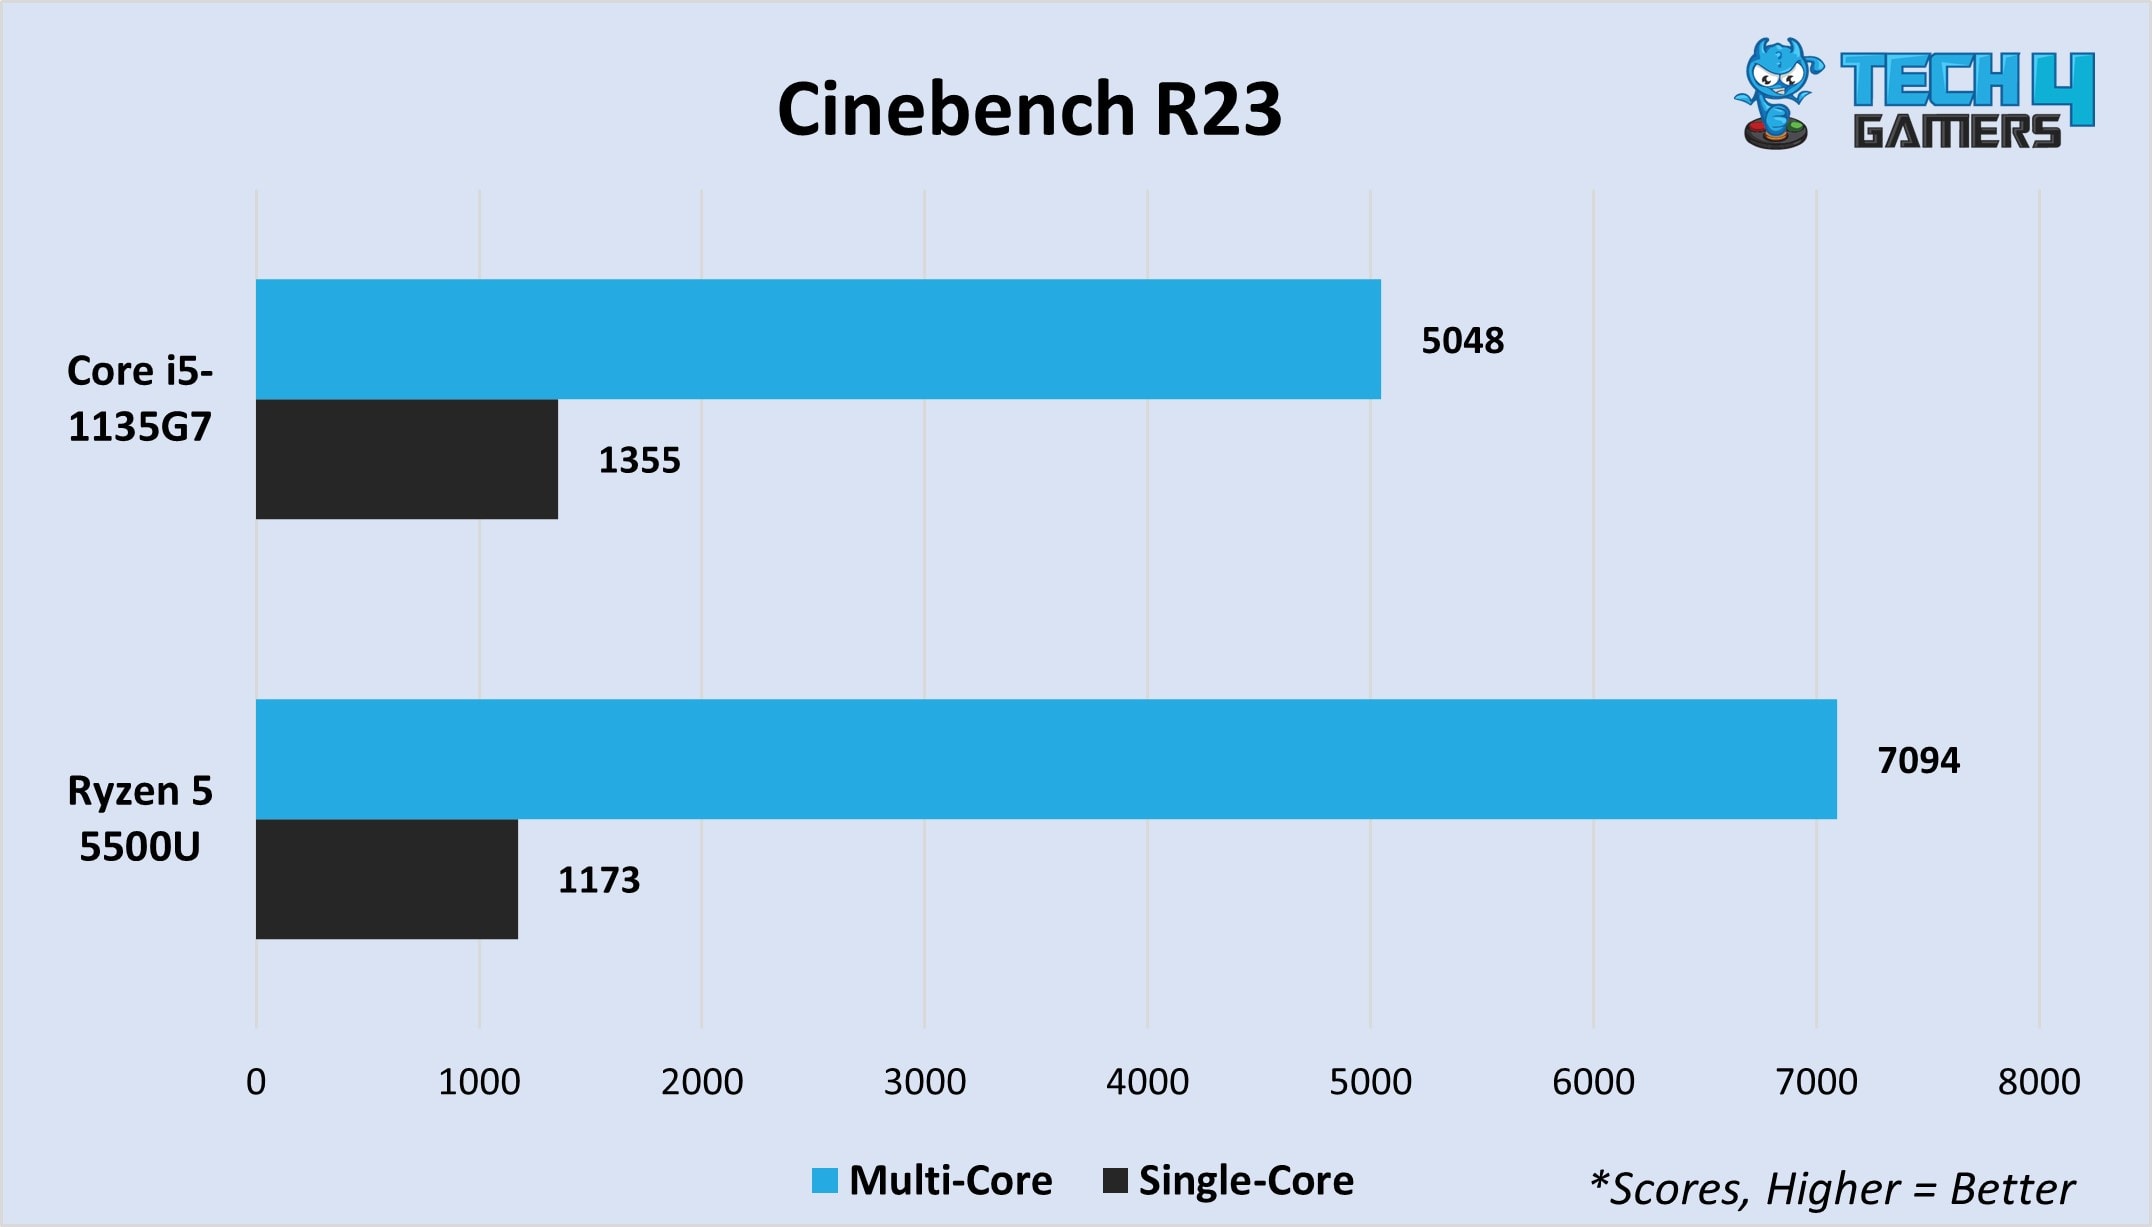 Cinebench R23 multi-core and single-core 